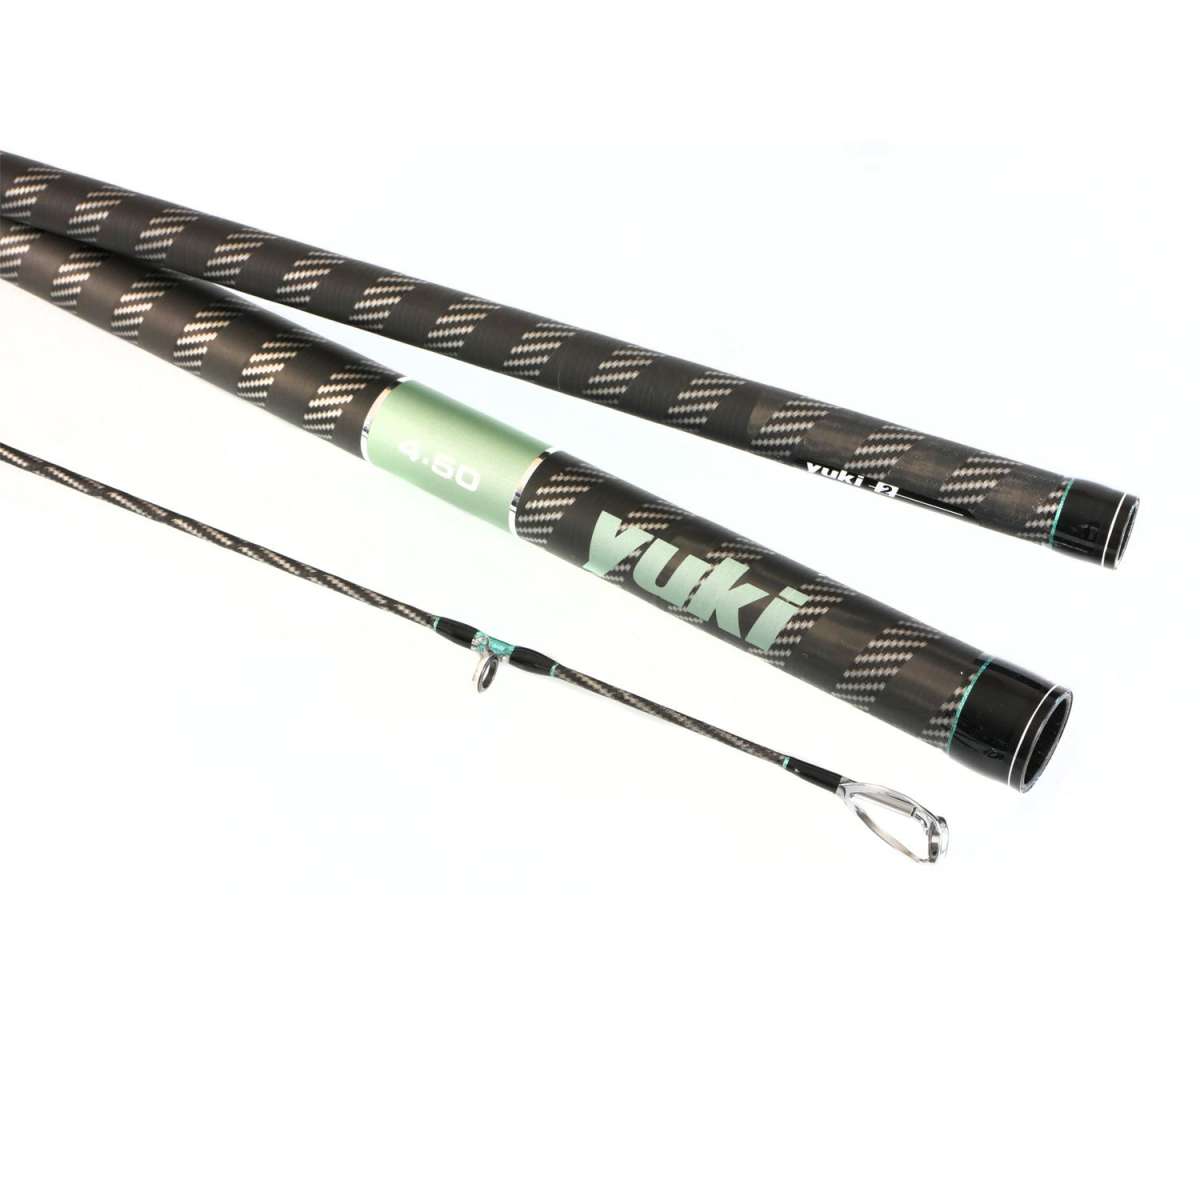 Yuki Telescopic Travel Fishing Rod 7ft 5-15g